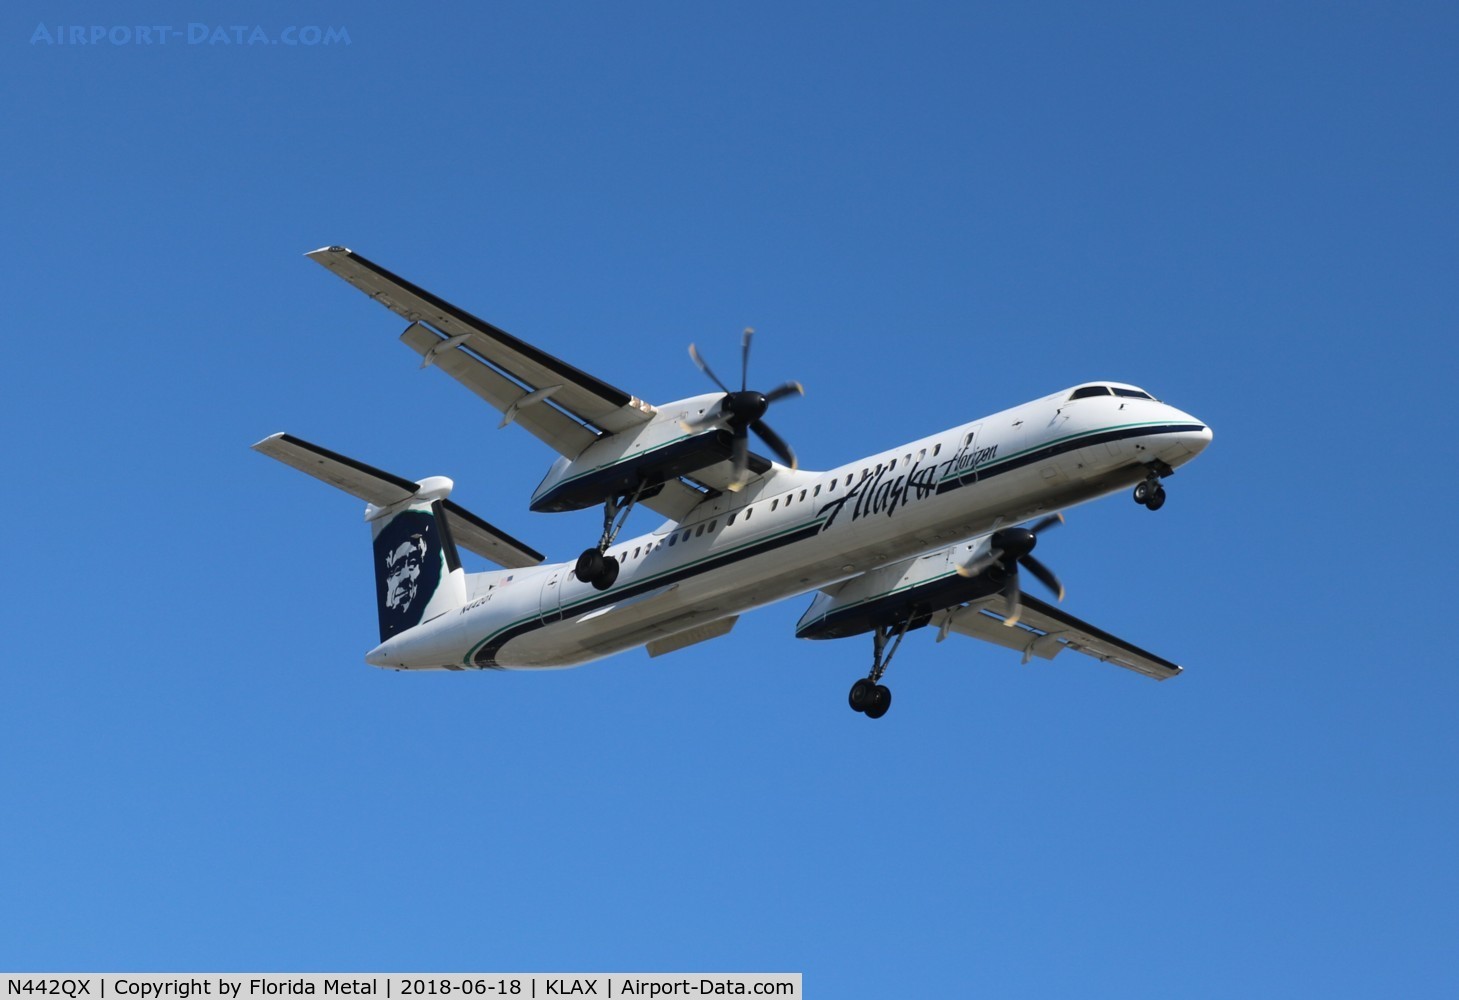 N442QX, 2010 Bombardier DHC-8-402 Dash 8 C/N 4352, LAX 2018